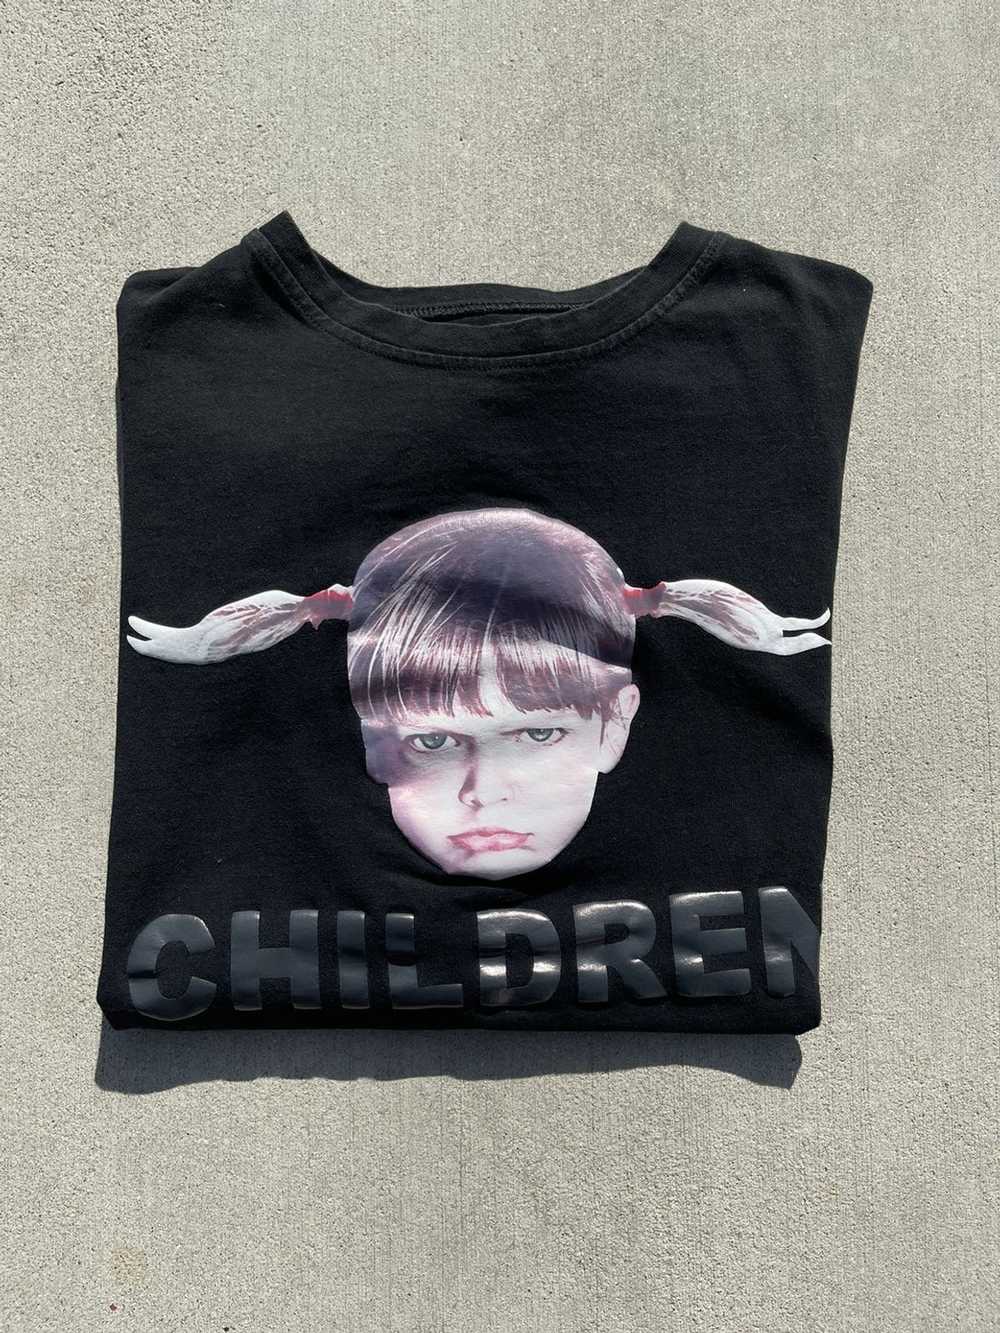 Other Vintage Children T-Shirt - image 2